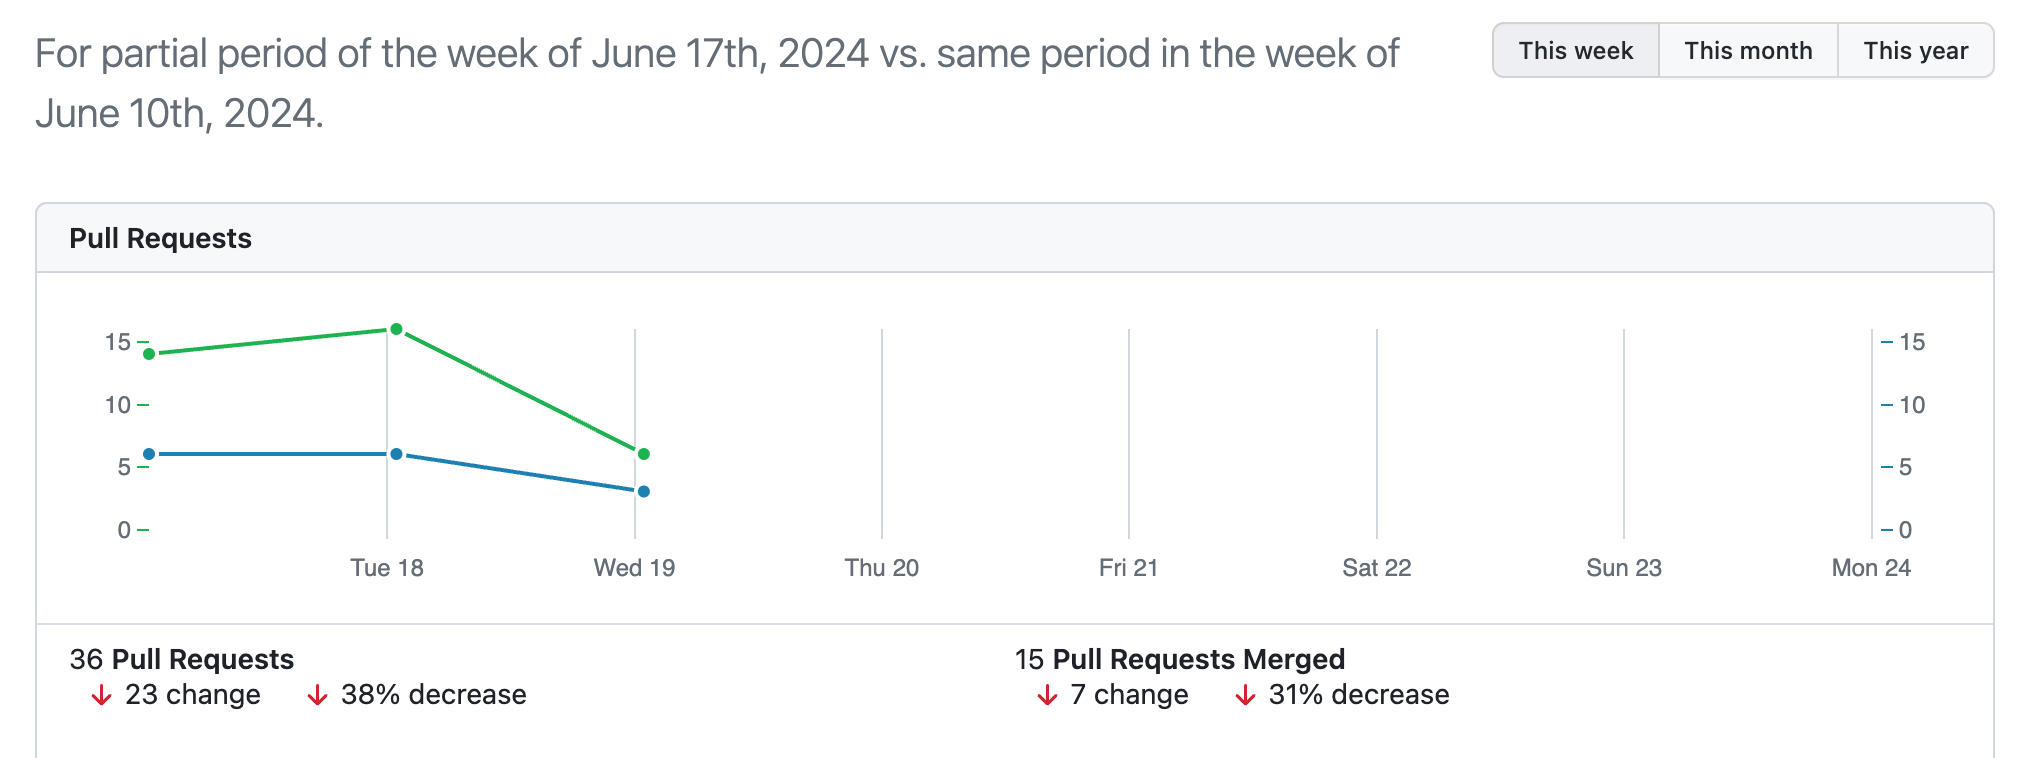 활동 대시보드의 스크린샷 선 그래프에서는 이번 주와 지난 주에 병합된 끌어오기 요청 수를 비교합니다.